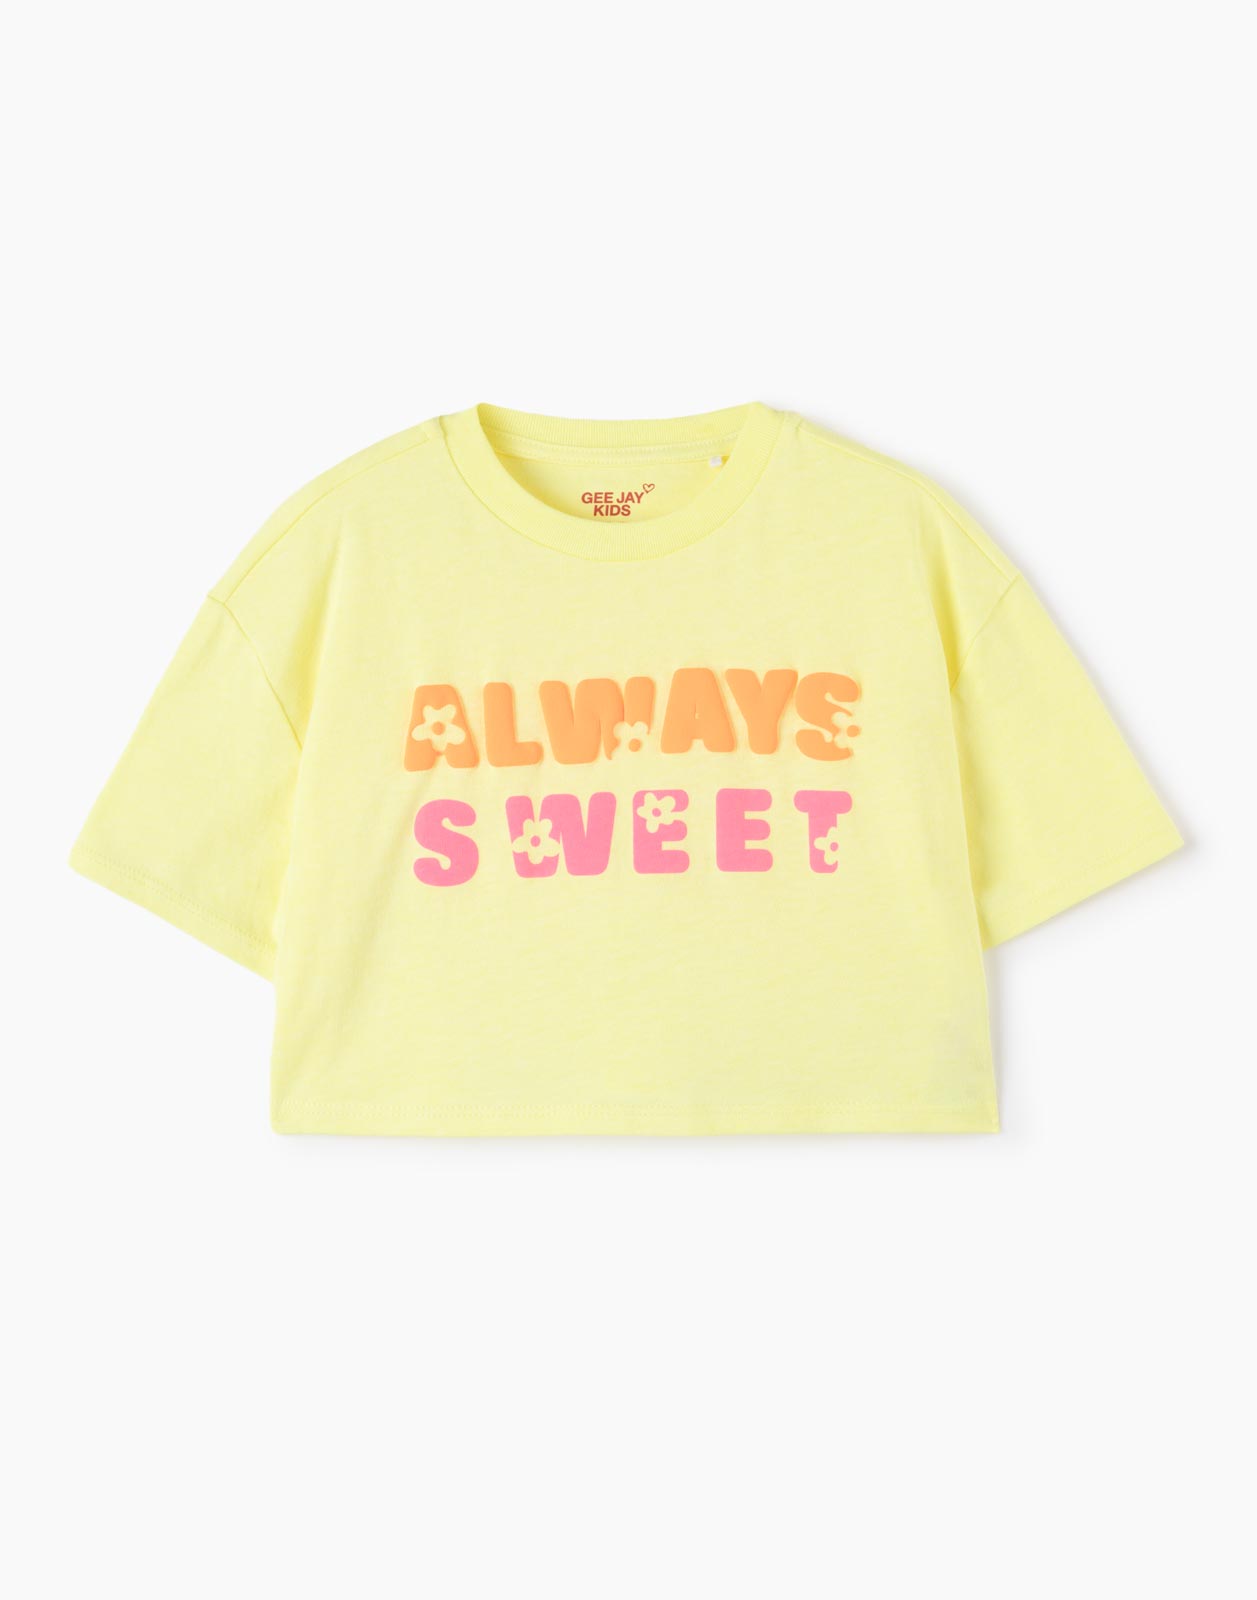 Жёлтая укороченная футболка Oversize с надписью для девочки 7-8л/128